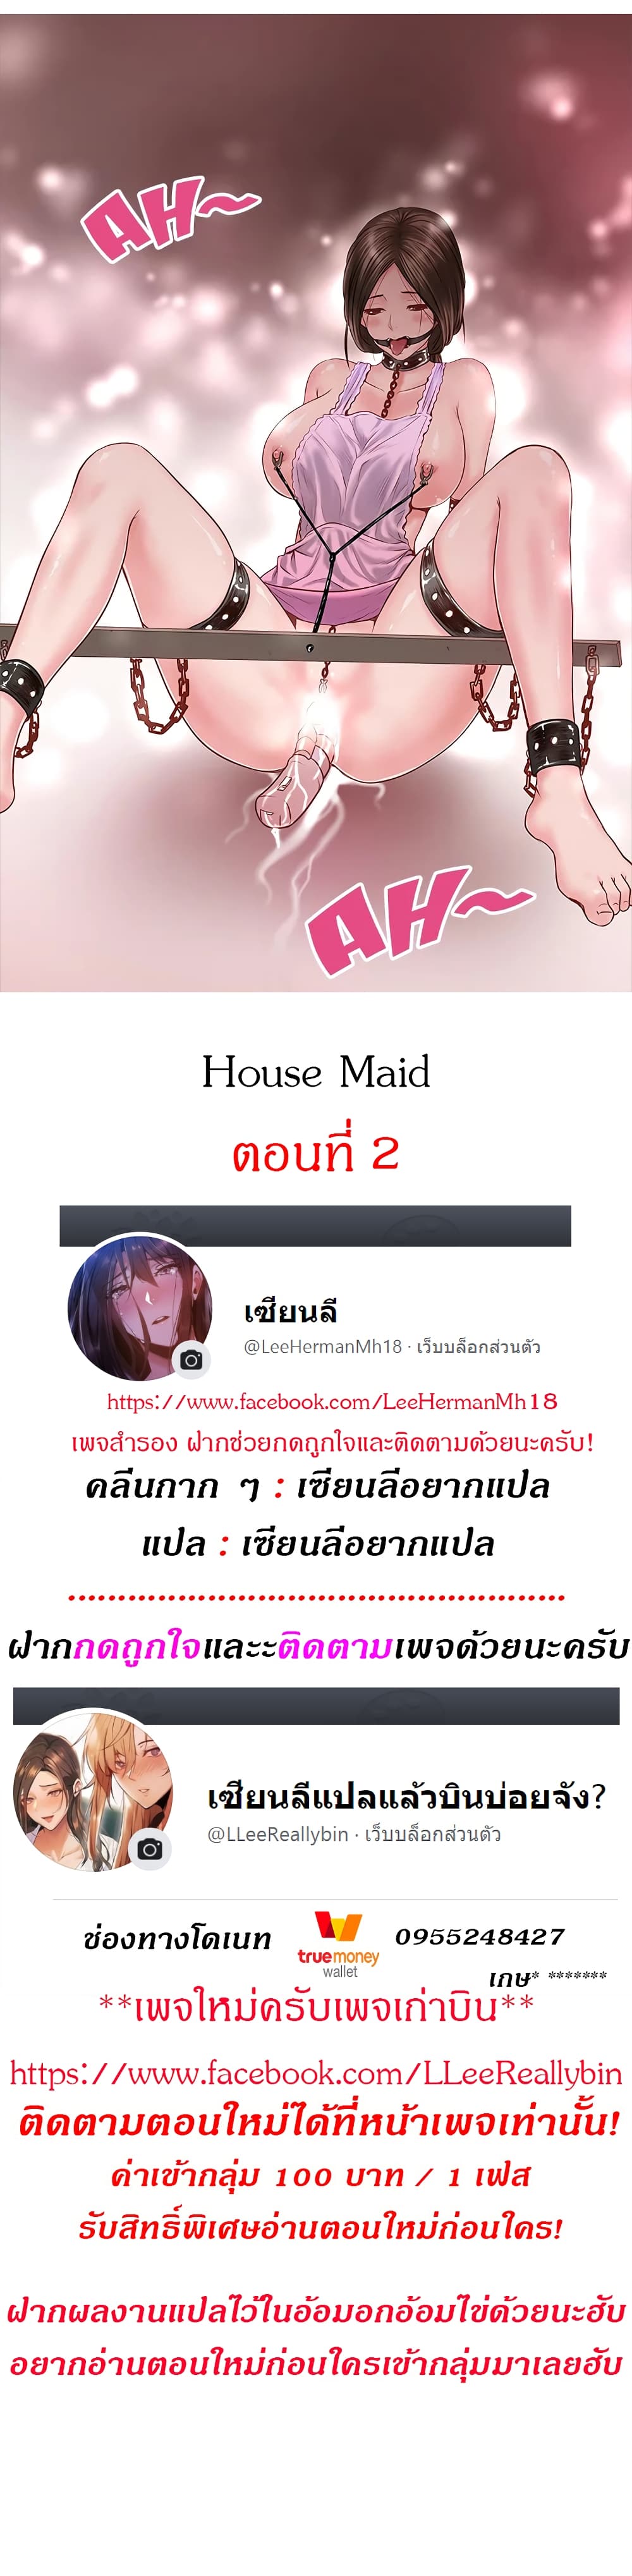 House Maid 2 (2)